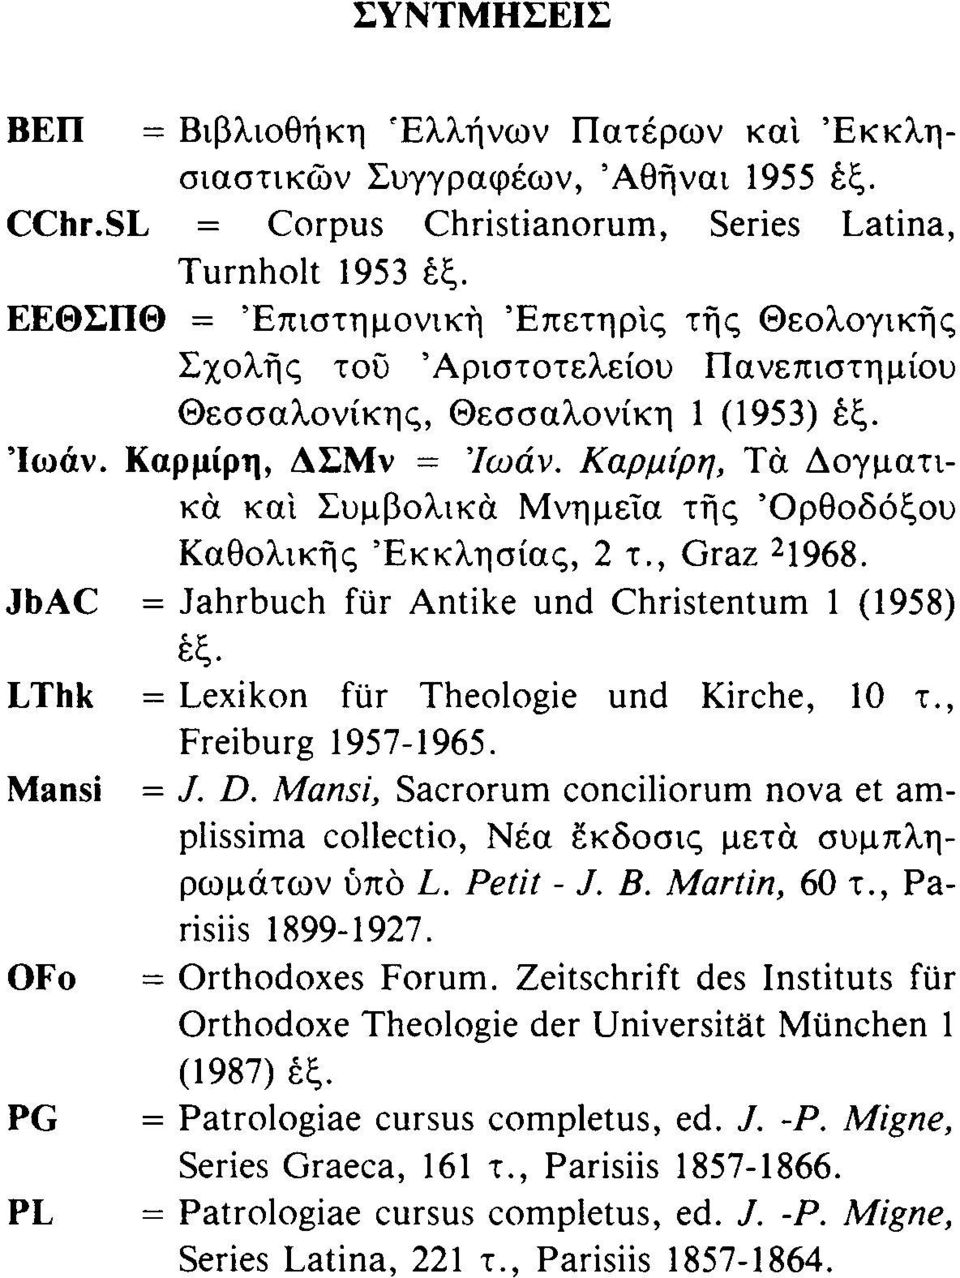 Καρμίρη, Τα Δογματικά και Συμβολικά Μνημεία τής Όρθοδόξου Καθολικής Εκκλησίας, 2 τ., Graz 2 1968. JbAC = Jahrbuch für Antike und Christentum 1 (1958) έξ. LThk = Lexikon für Theologie und Kirche, 10 τ.